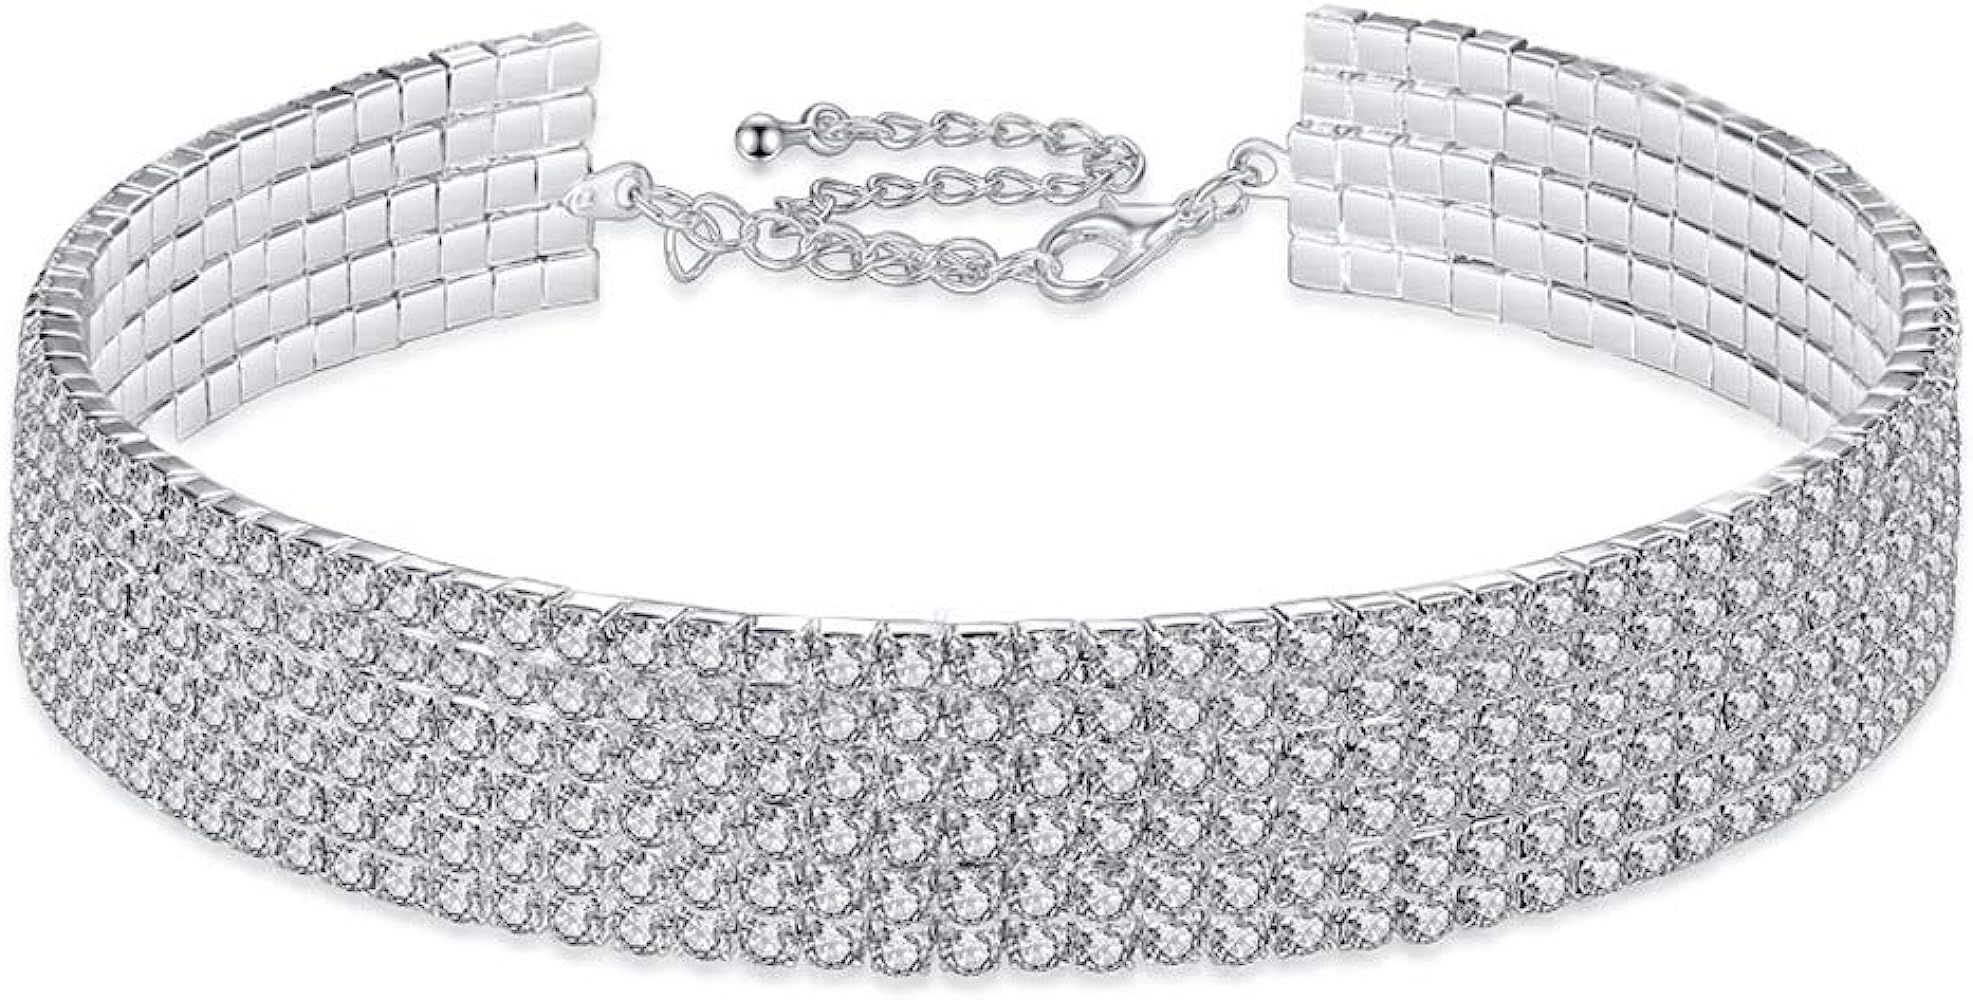 Dream Date Silver Diamond Mounted Shinning Layered Choker Necklace | Amazon (US)